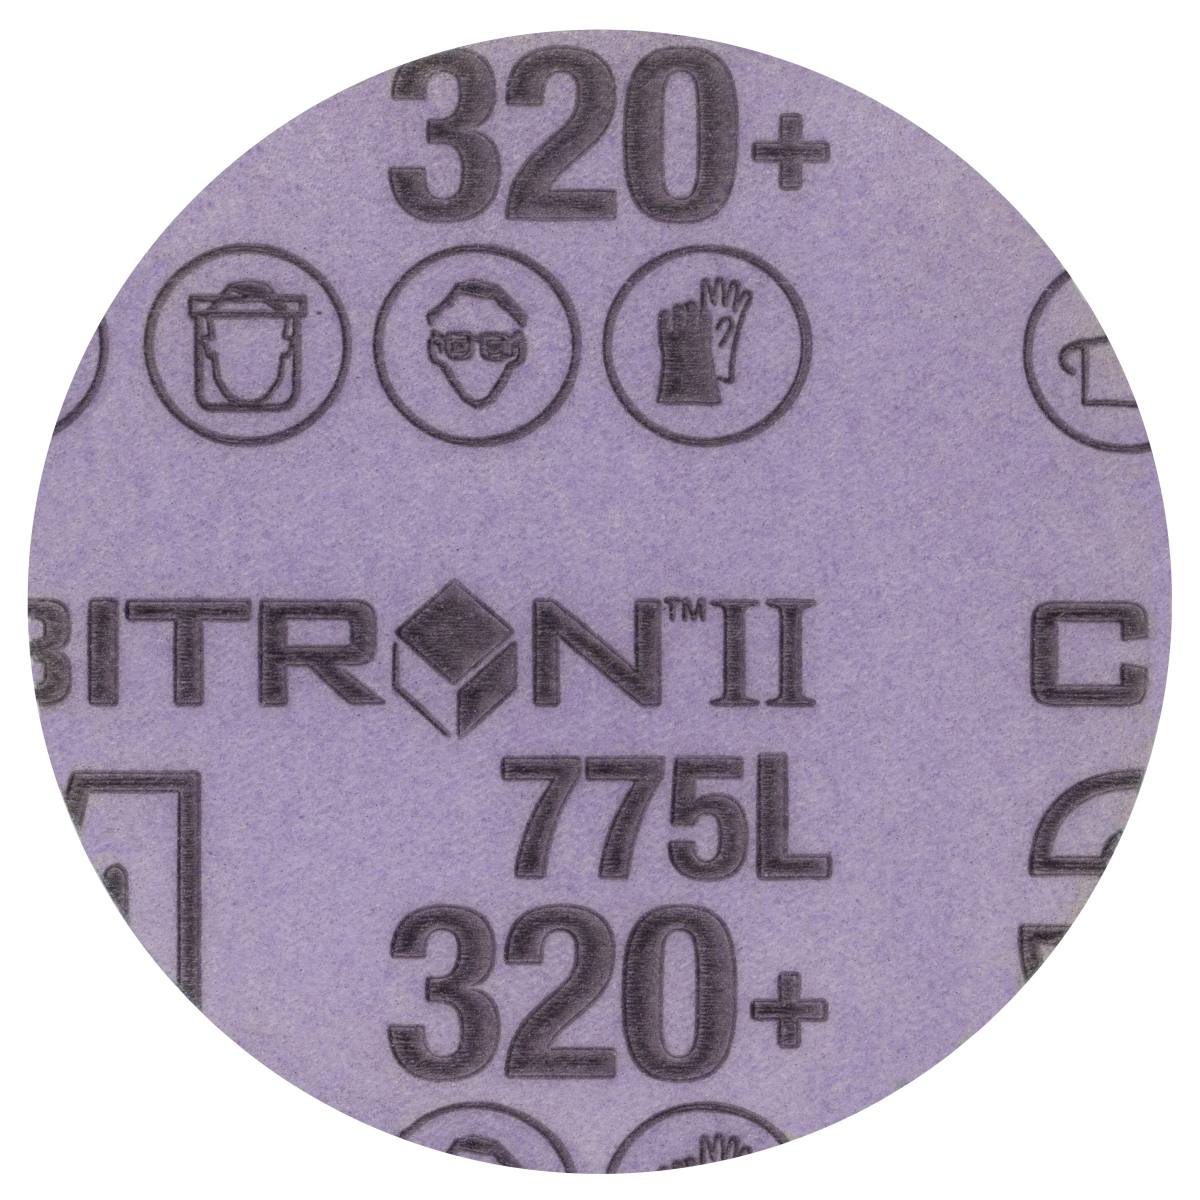 3M Cubitron II Hookit disque de film 775L, 125 mm, 320+, non perforé #47080